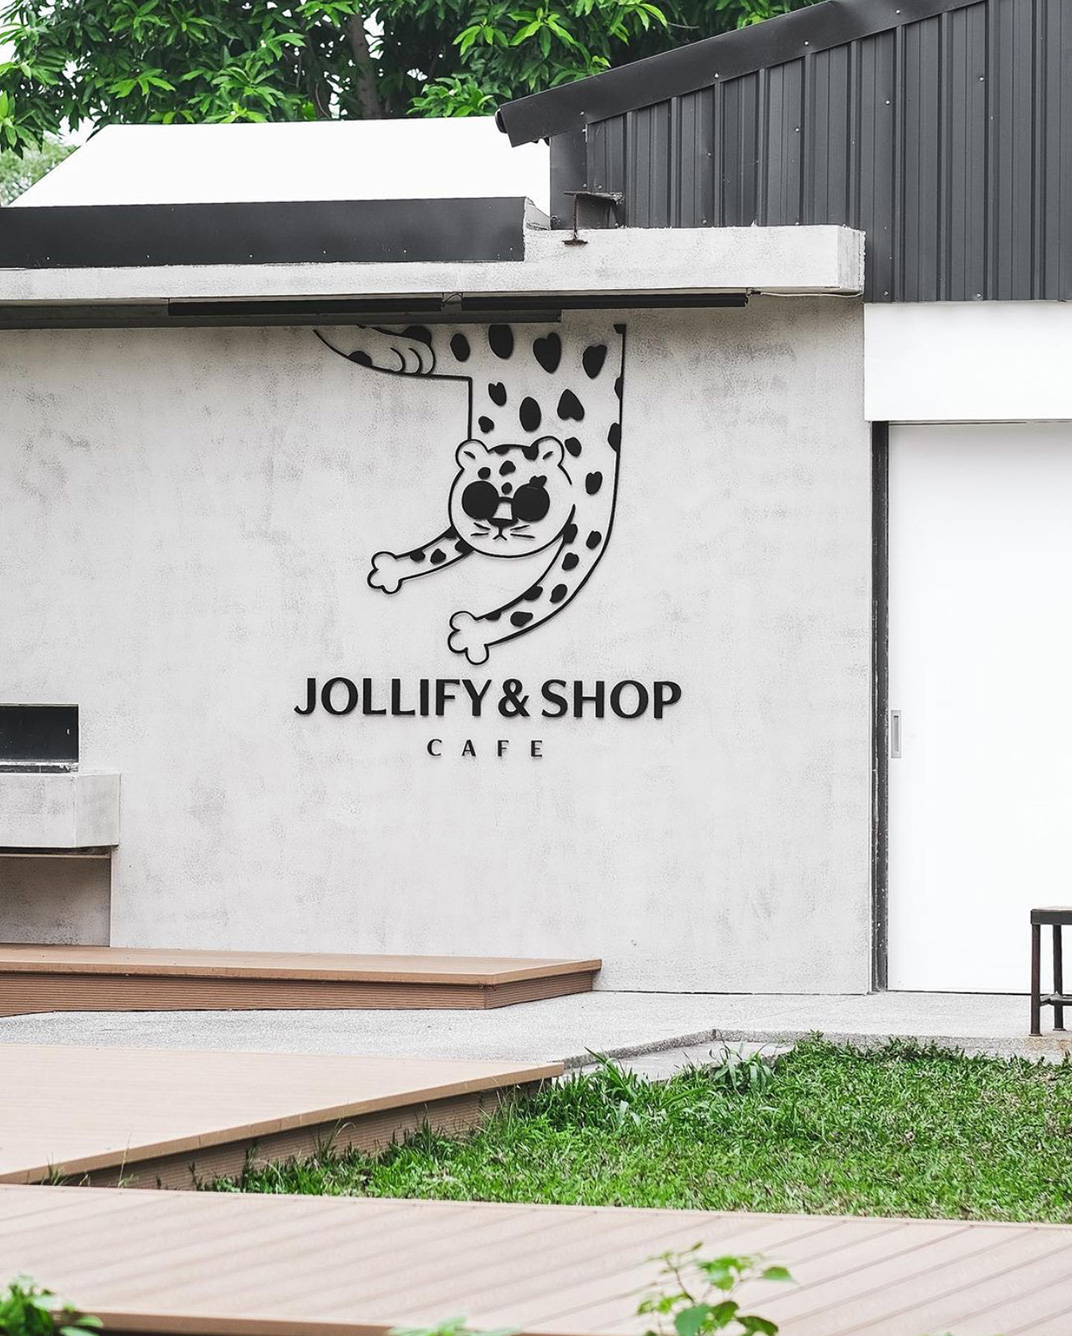 甜品店Jollify & Shop Cafe 台湾 甜品店 简餐店 面包店 轻食 插图设计 动物 logo设计 vi设计 空间设计